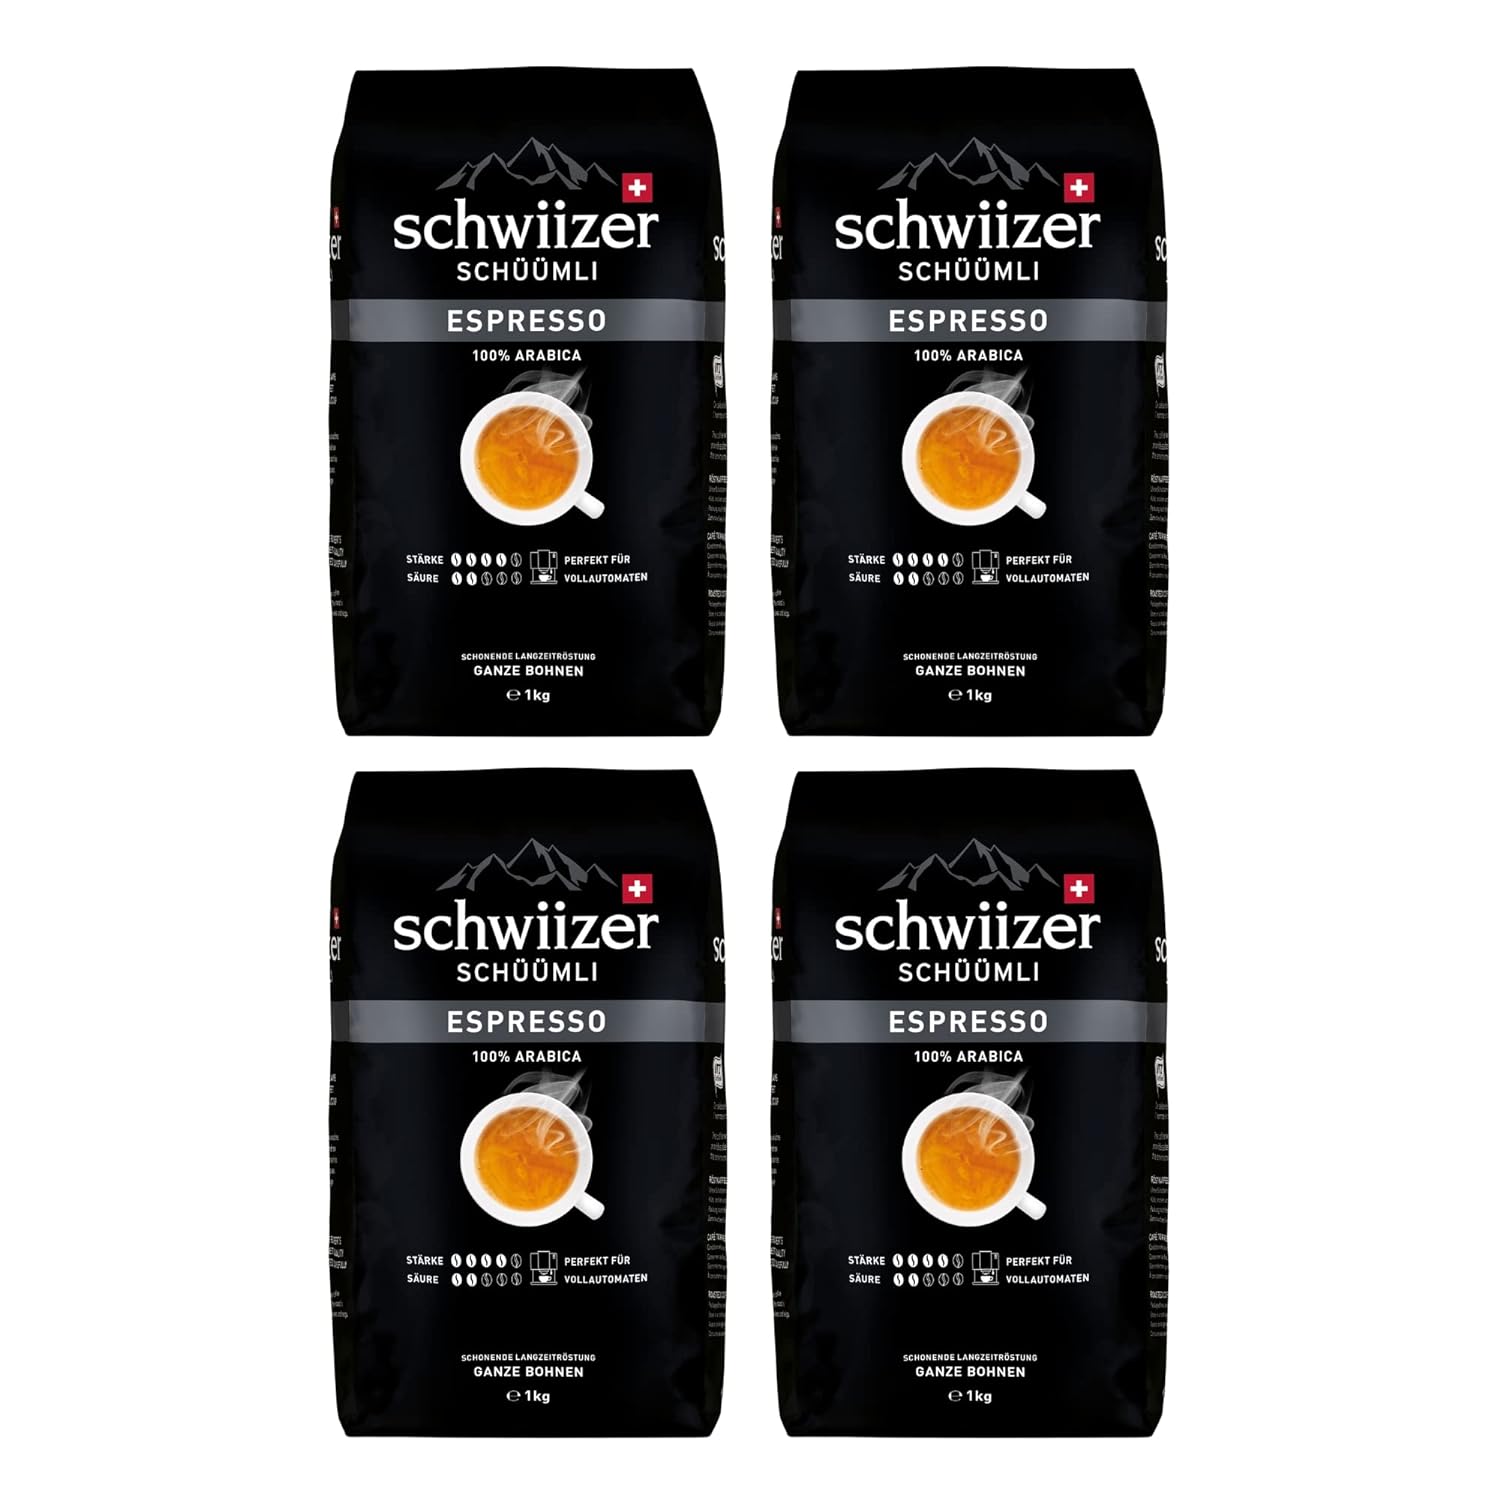 Schwiizer Schüümli espresso entire coffee beans 4kg - intensity 4/5 - Utz -certified